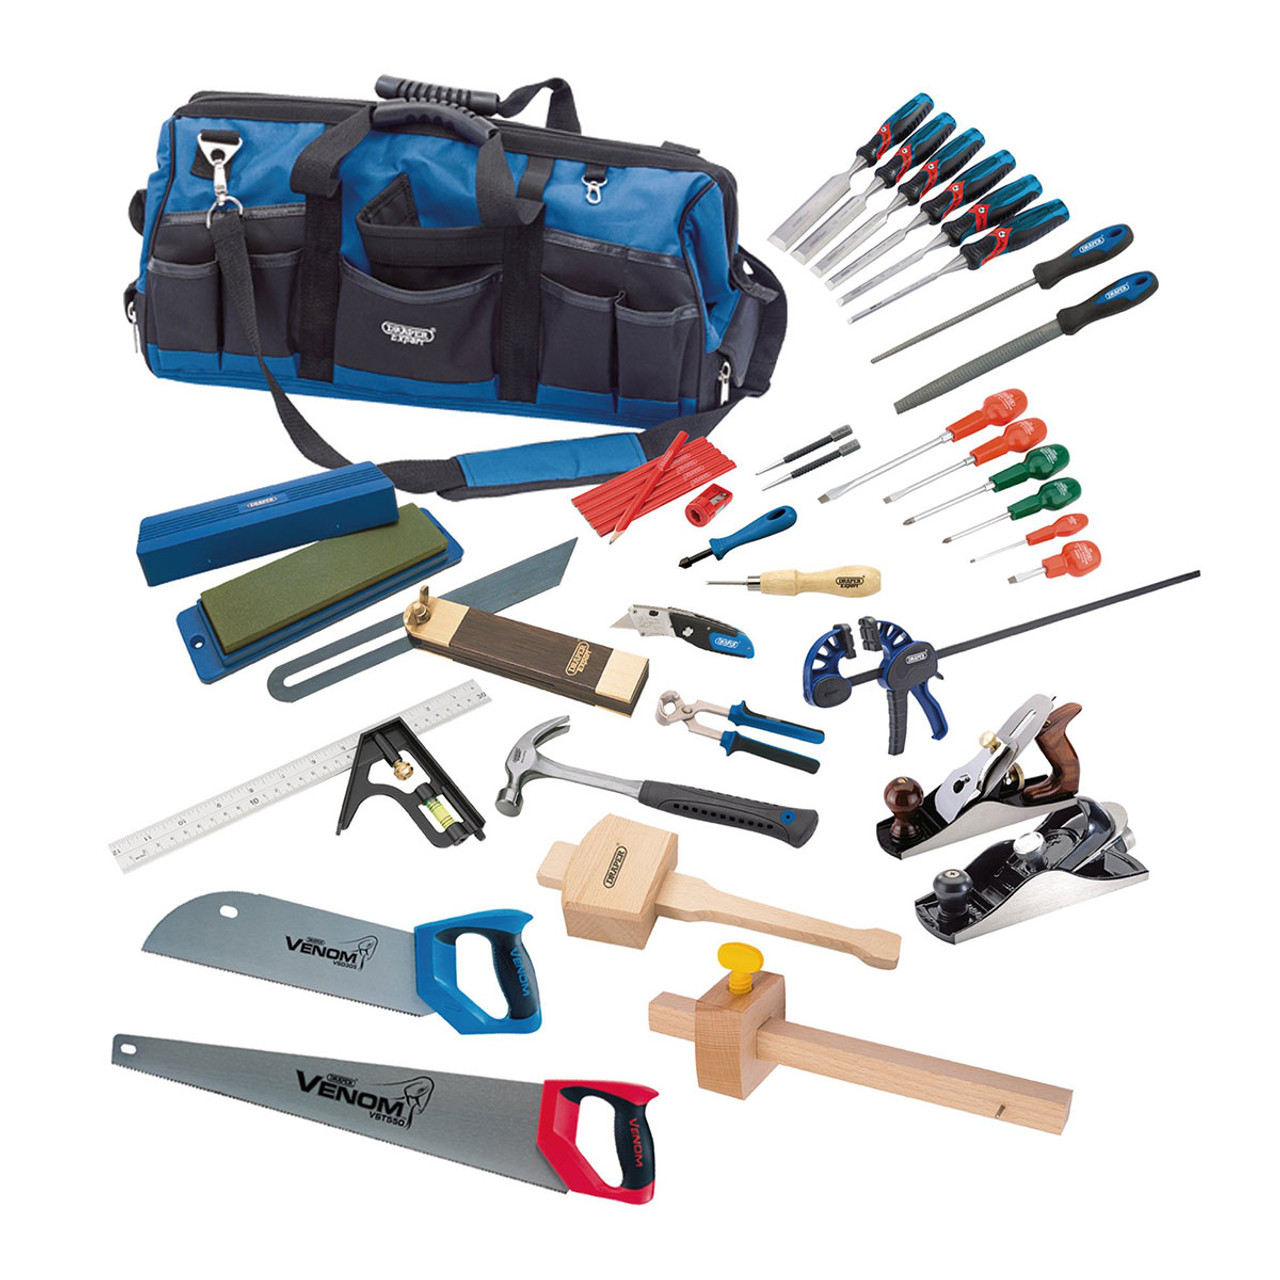 Draper 99242 Carpenters Hand Tool Kit | Toolstop